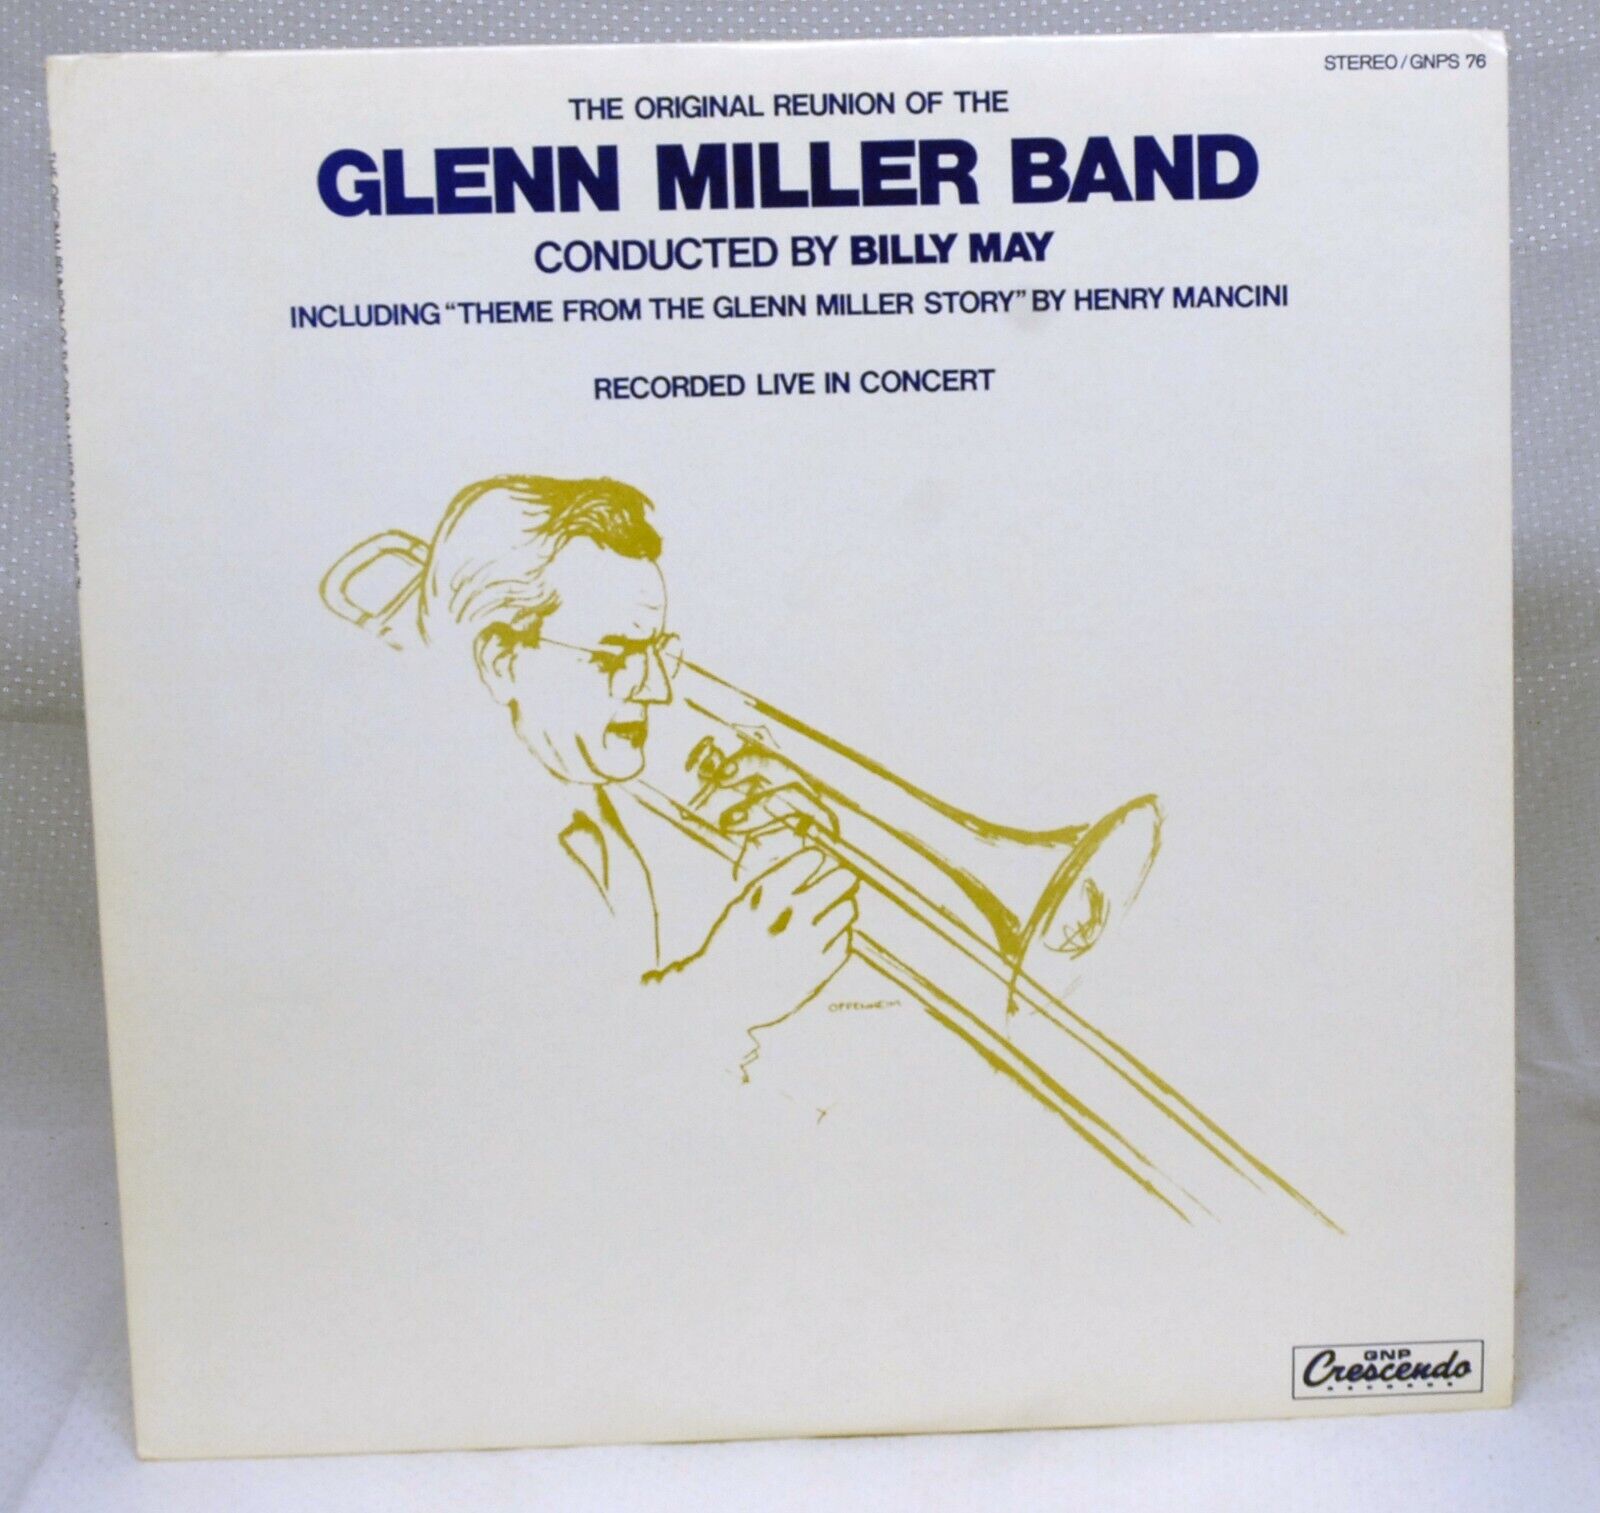 VINTAGE LP The Original Reunion of the Glenn Miller Band Live in Concert ED215